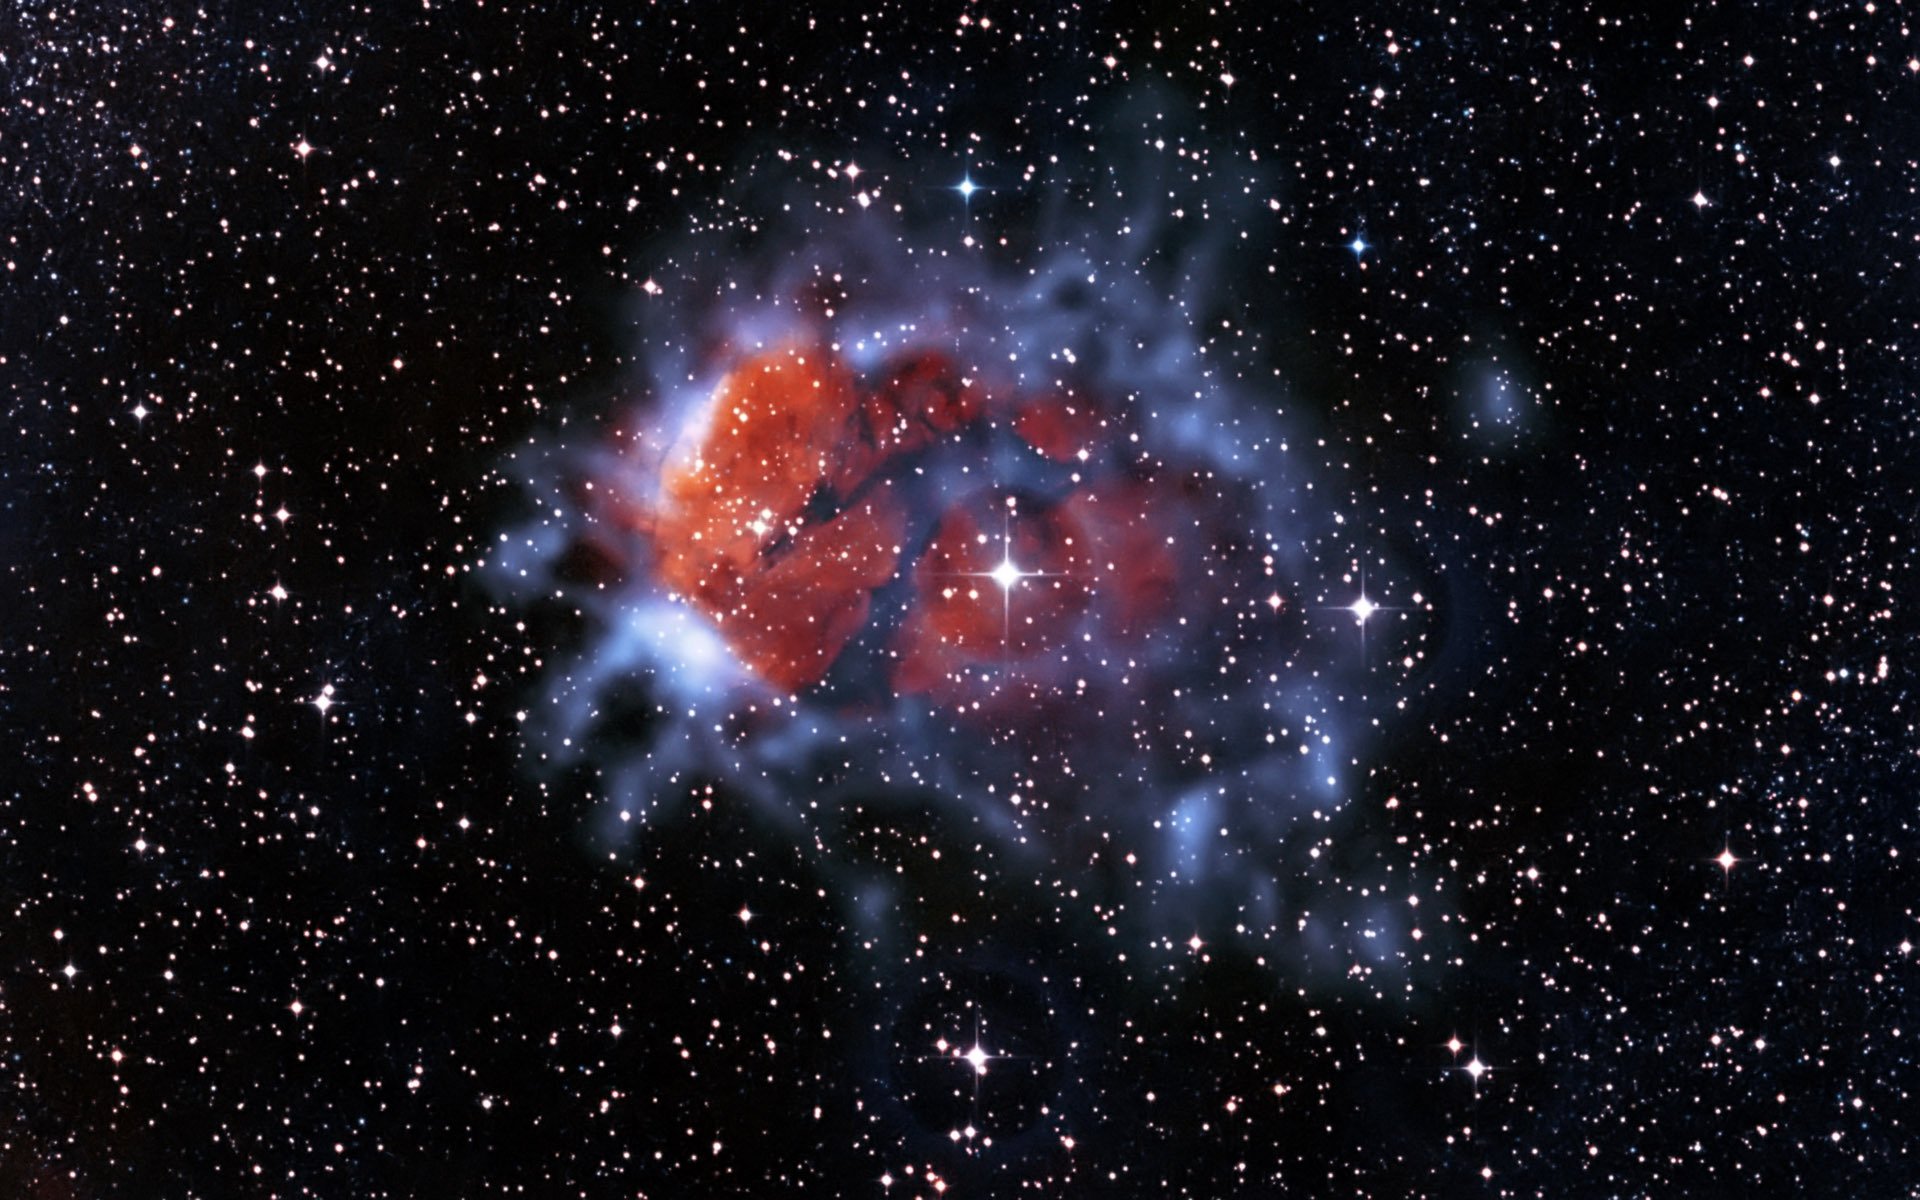 rcw120 эмиссионная туманность созвездие скорпион